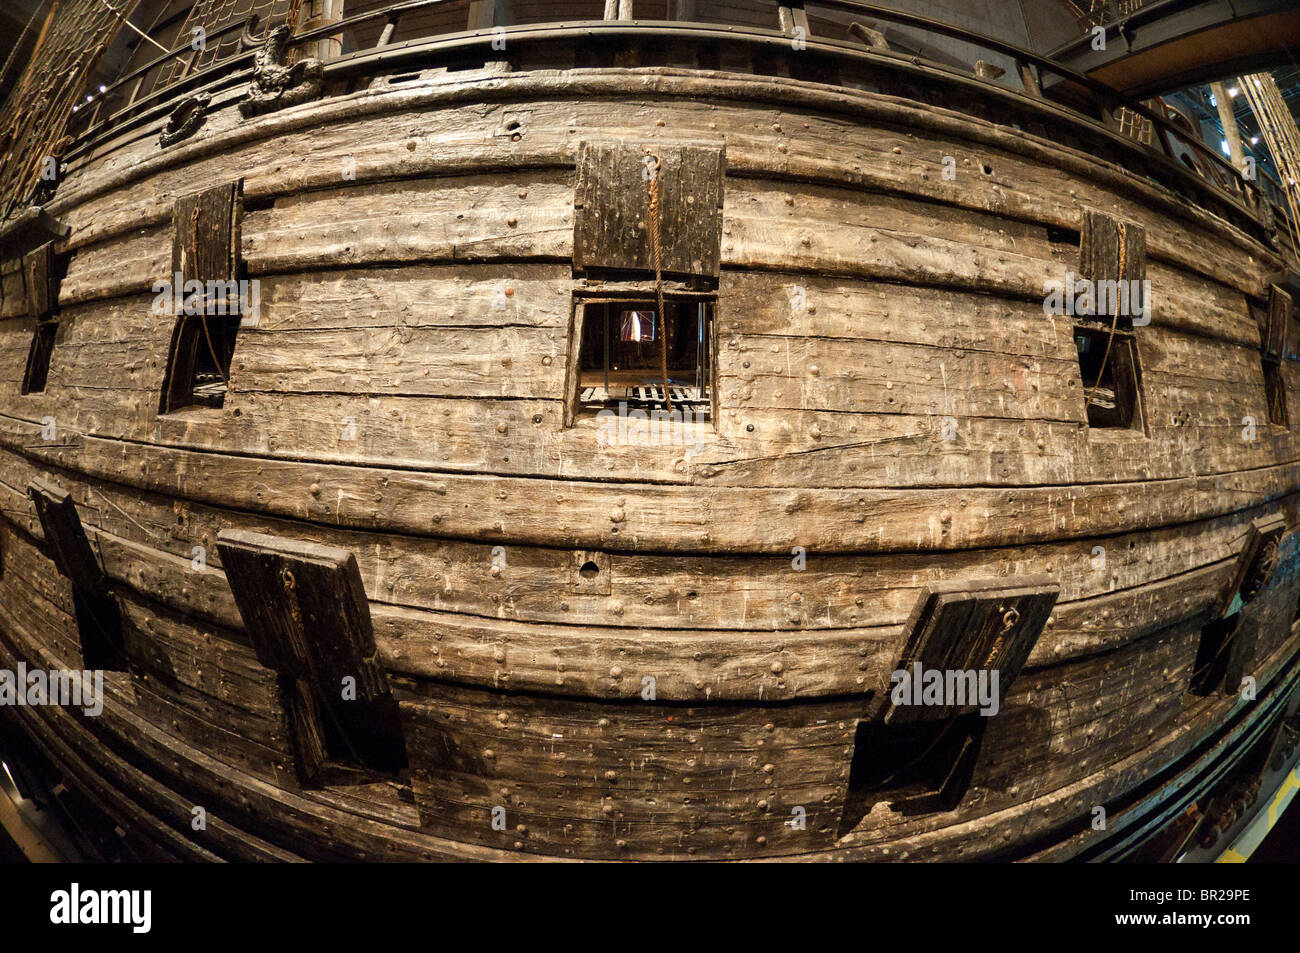 Une photographie de l'œil sur les sabords navire suédois Vasa dans le musée Vasa (Vasamuseet) à Stockholm, en Suède. Banque D'Images